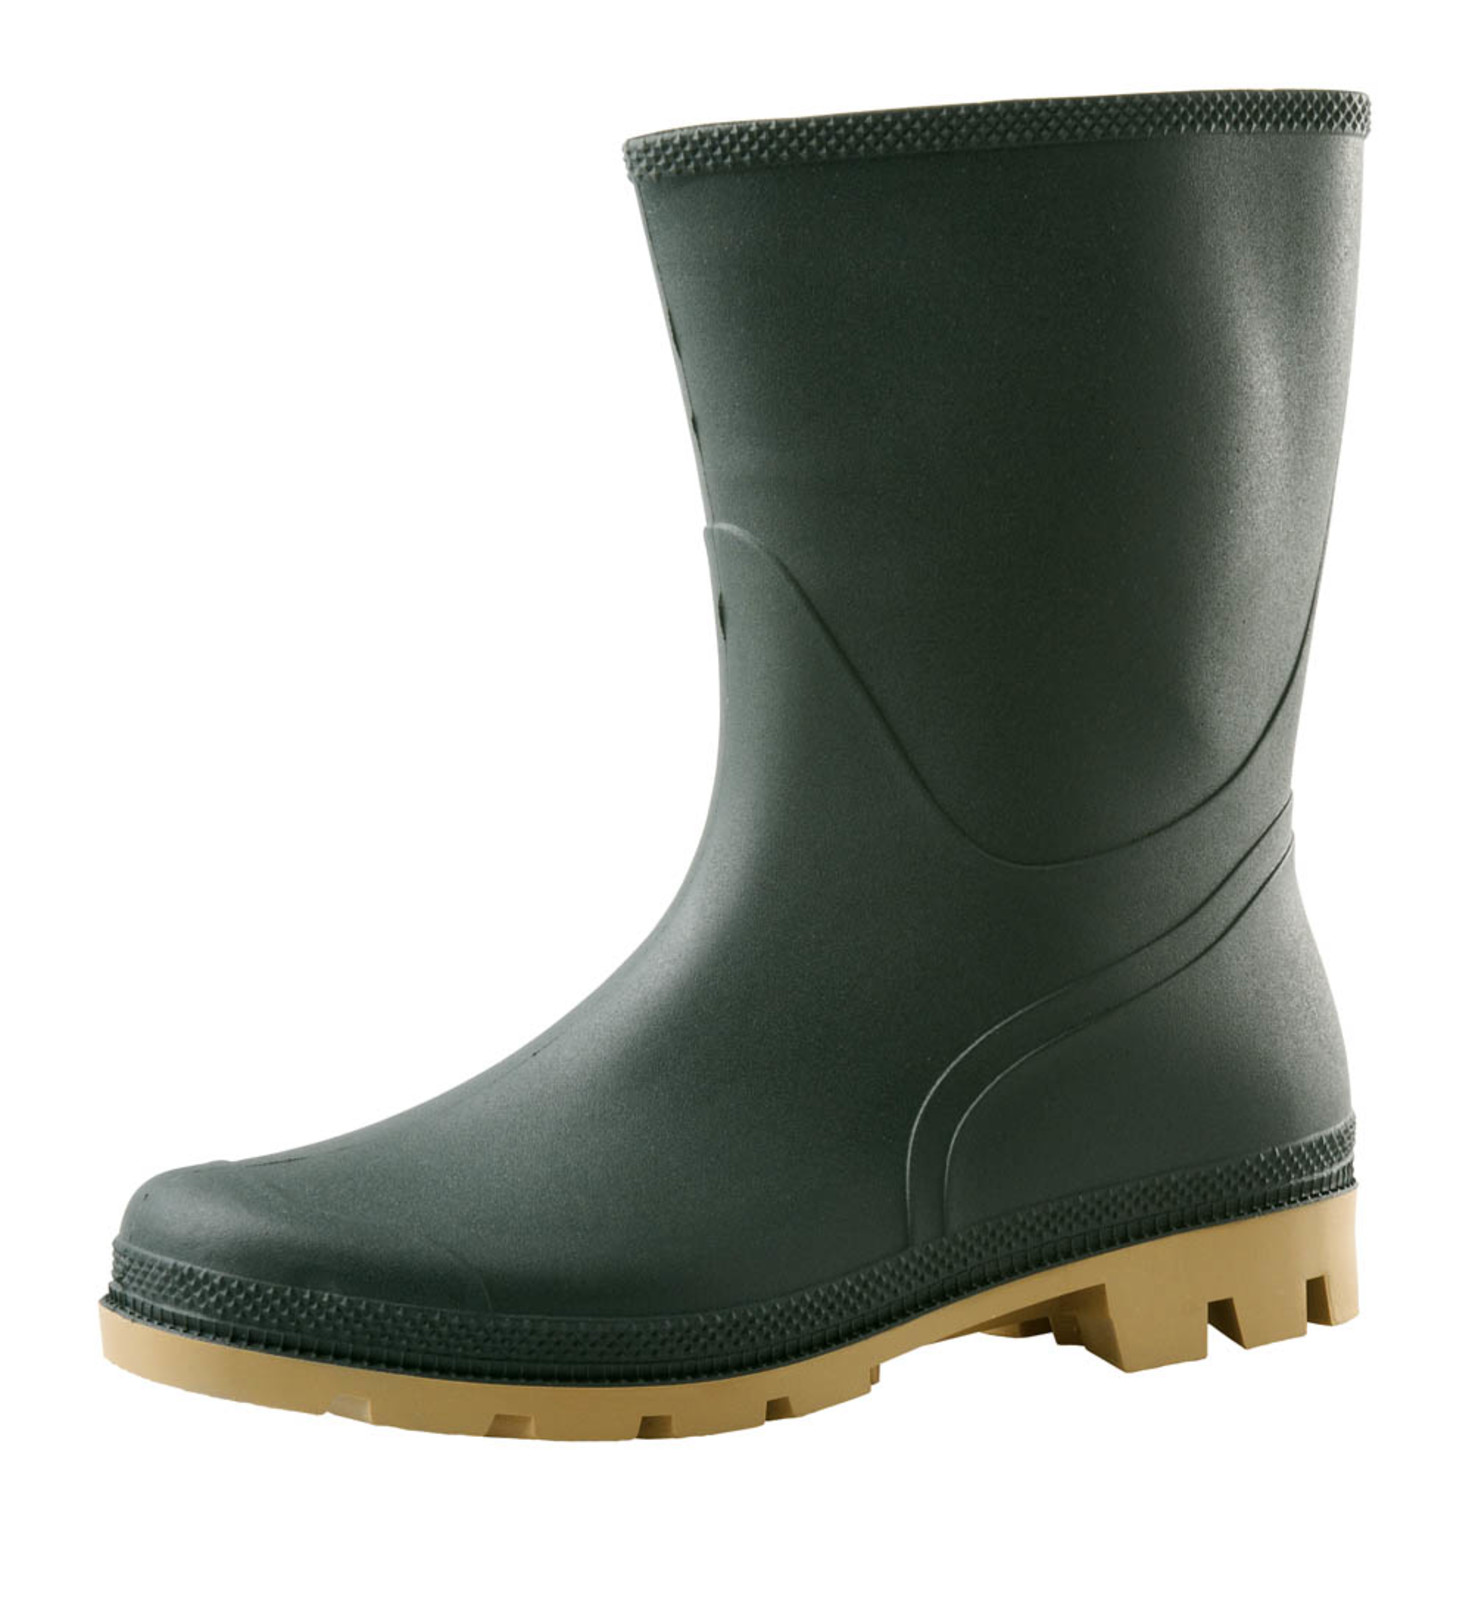 Gumáky Boots Troncheto PVC nízke - veľkosť: 47, farba: zelená